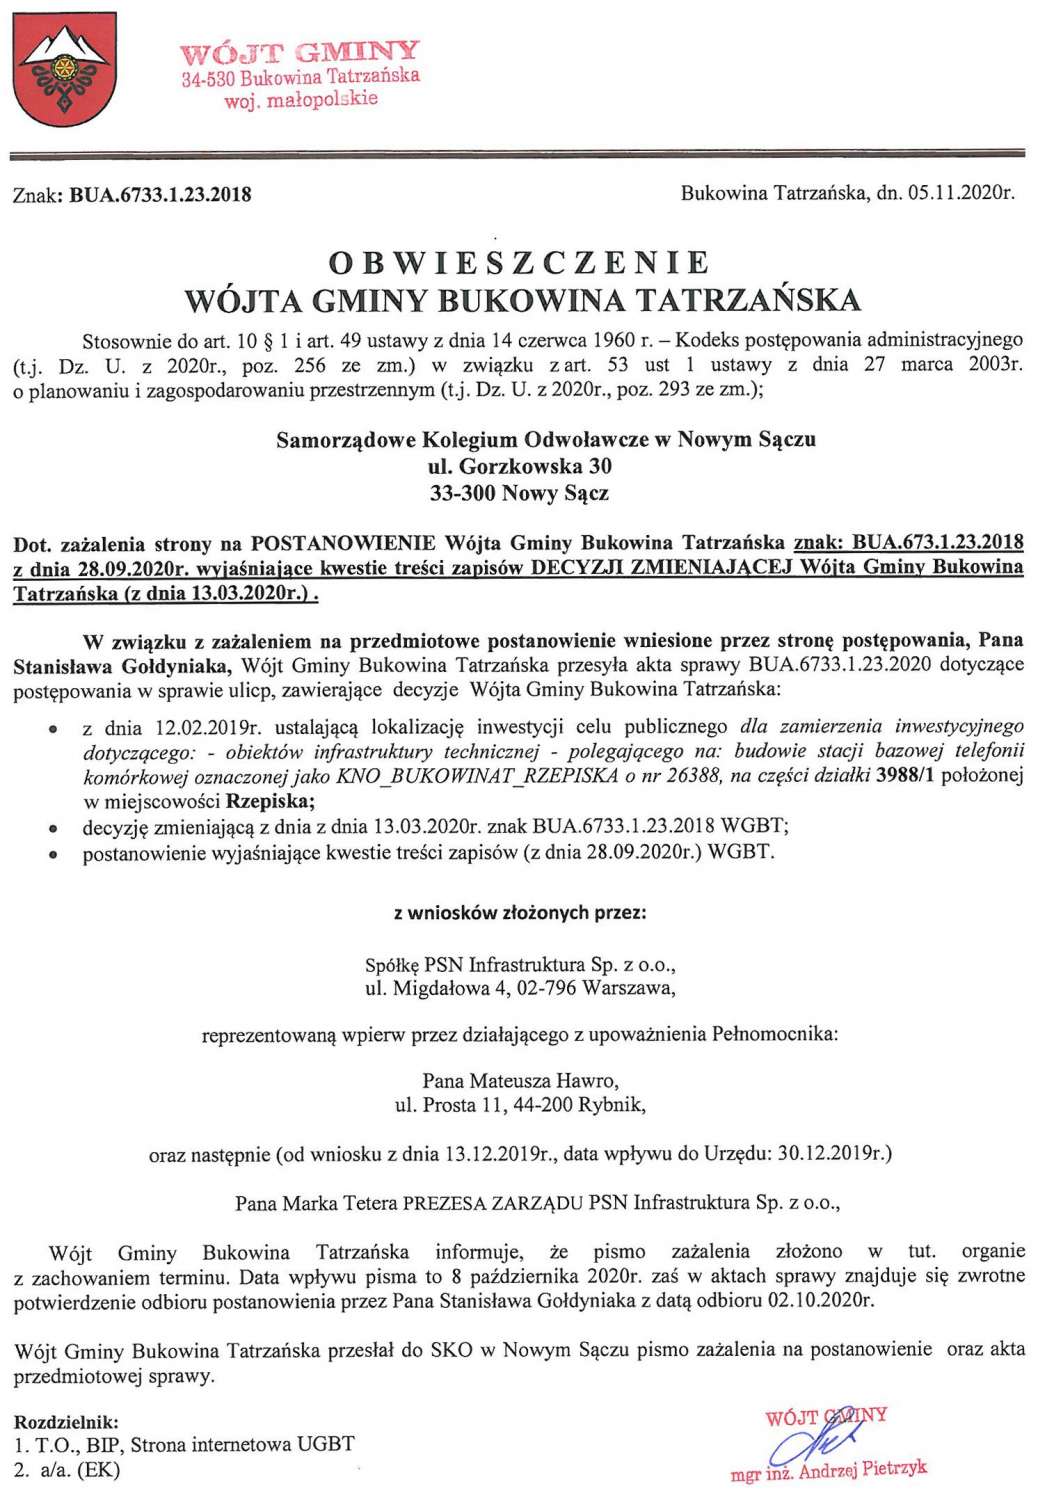 Obwieszczenie Wójta Gminy Bukowina Tatrzańska BUA 6733.1.23.2018